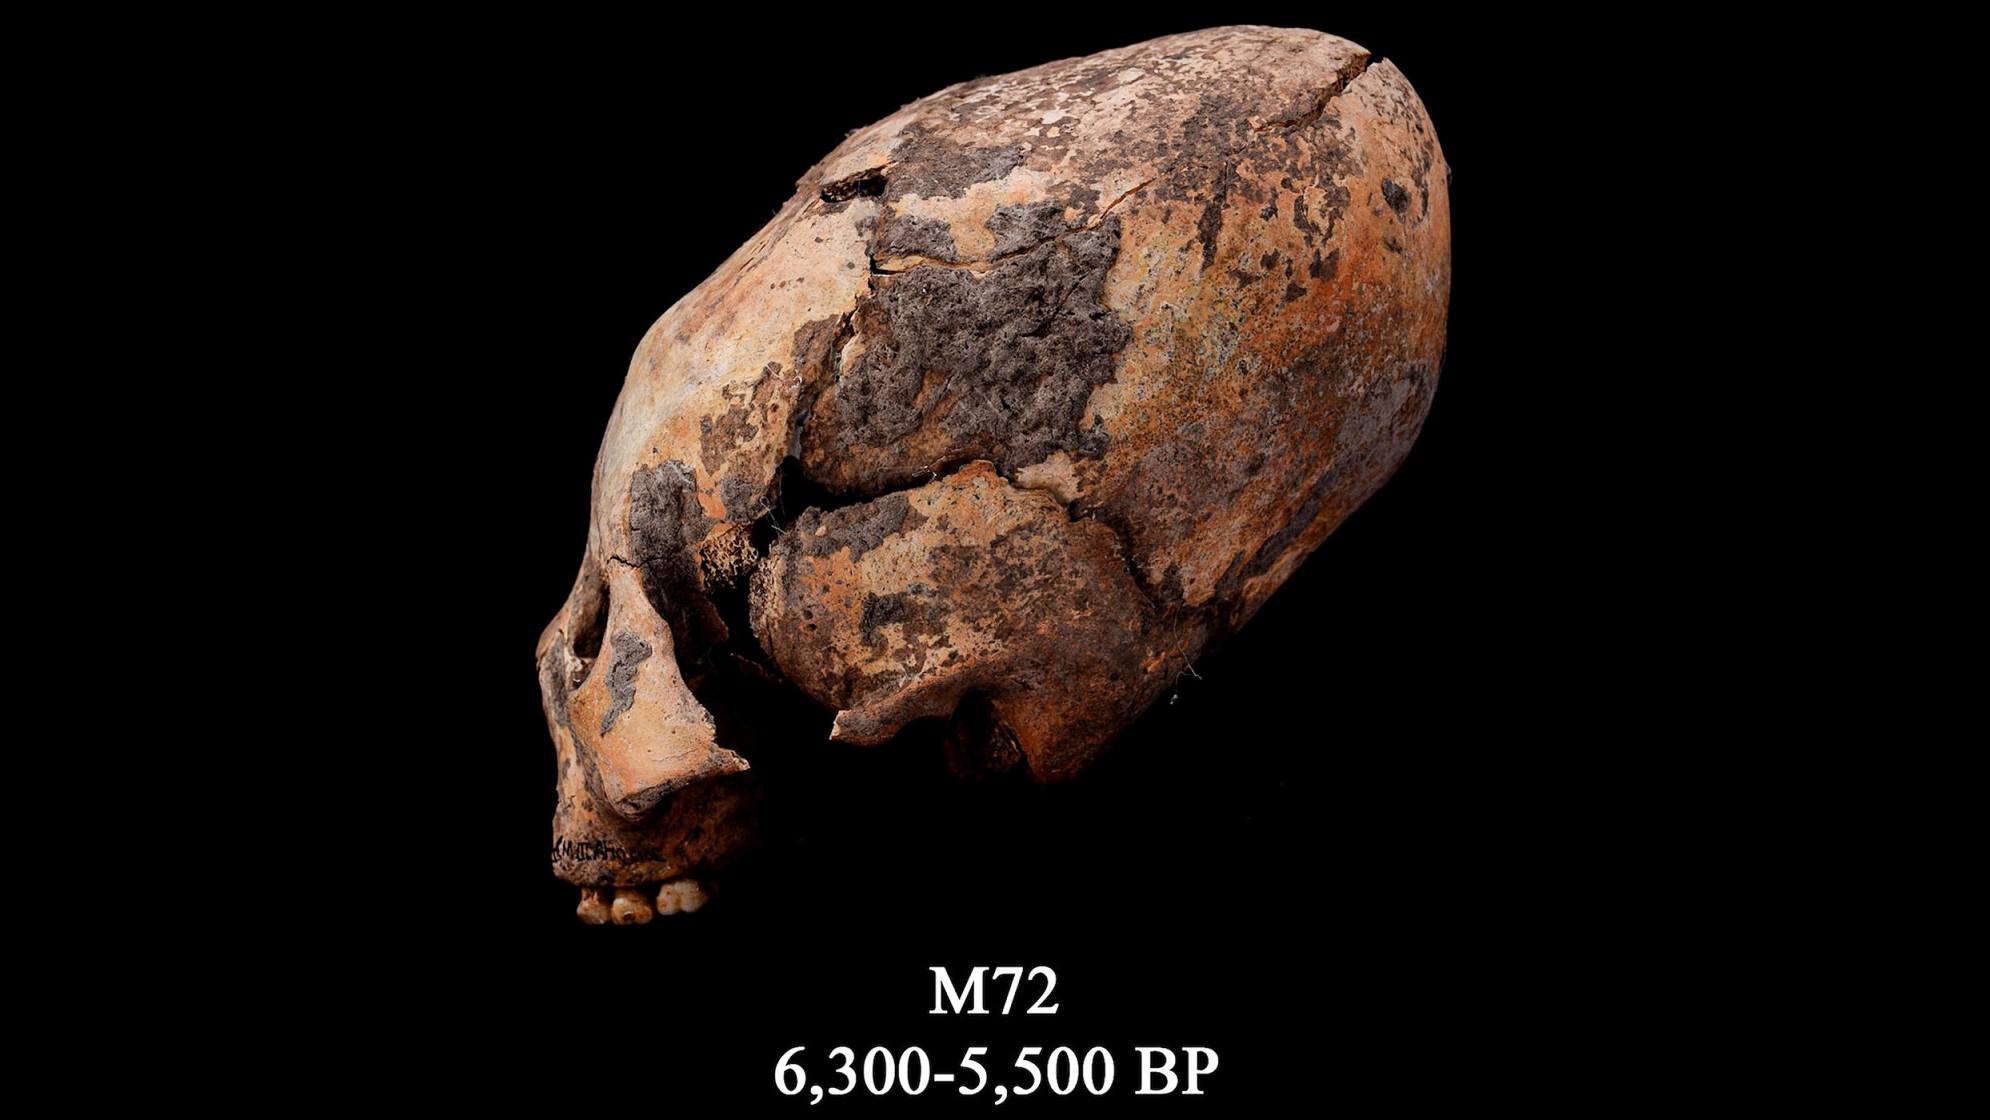 El cráneo conocido como M72.  Este cráneo humano remodelado se encontró en el noreste de China y fue modificado intencionalmente